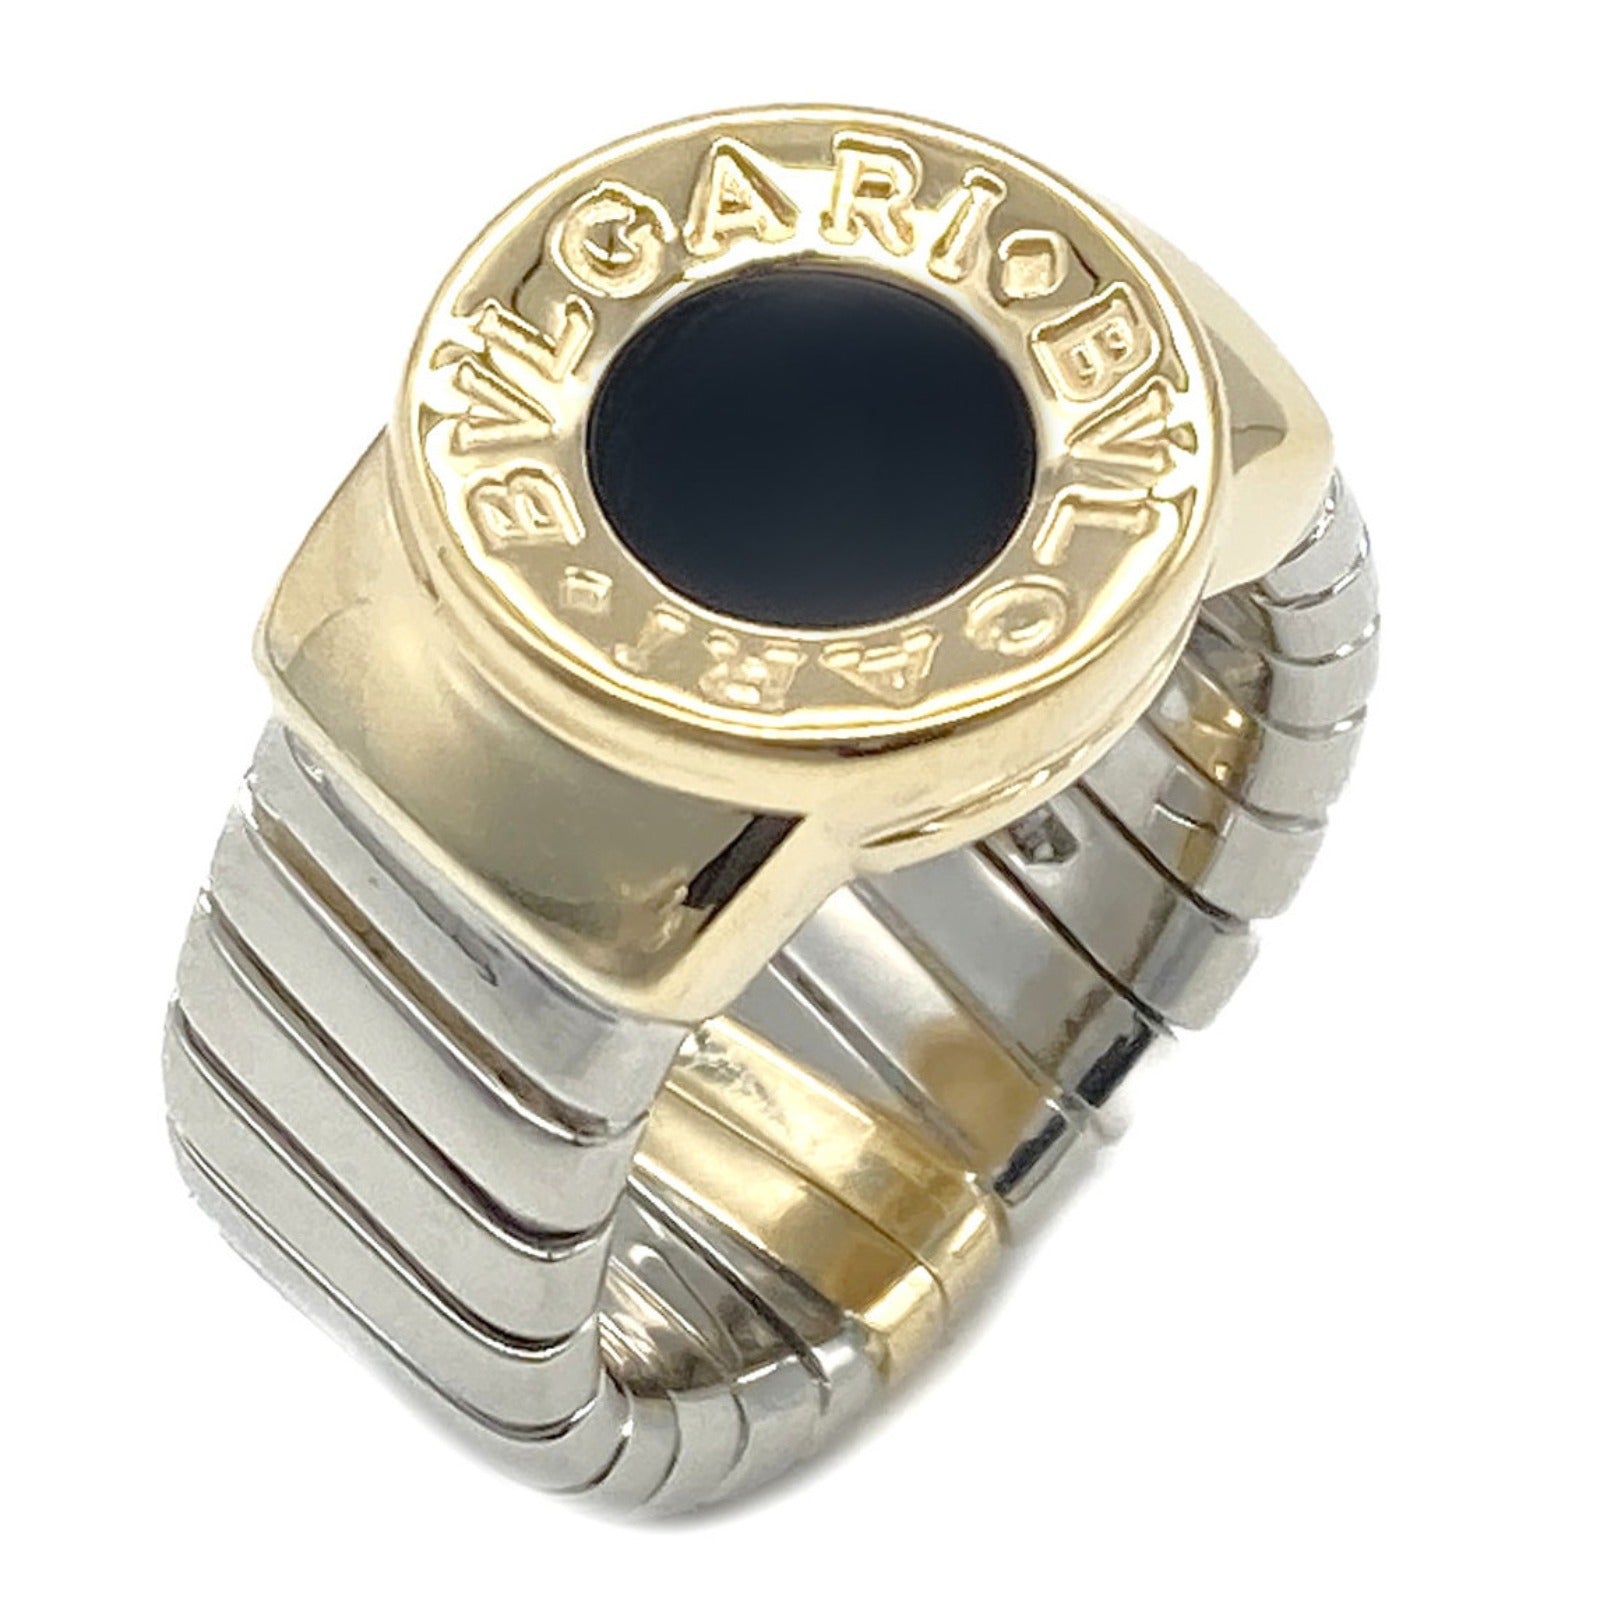 Bulgaris BVLGARI ns Tubegas Onix Ring Ring Ring Ring Jewelry K18 (Yellow G) Stainless Steel Onix   Black Close-up